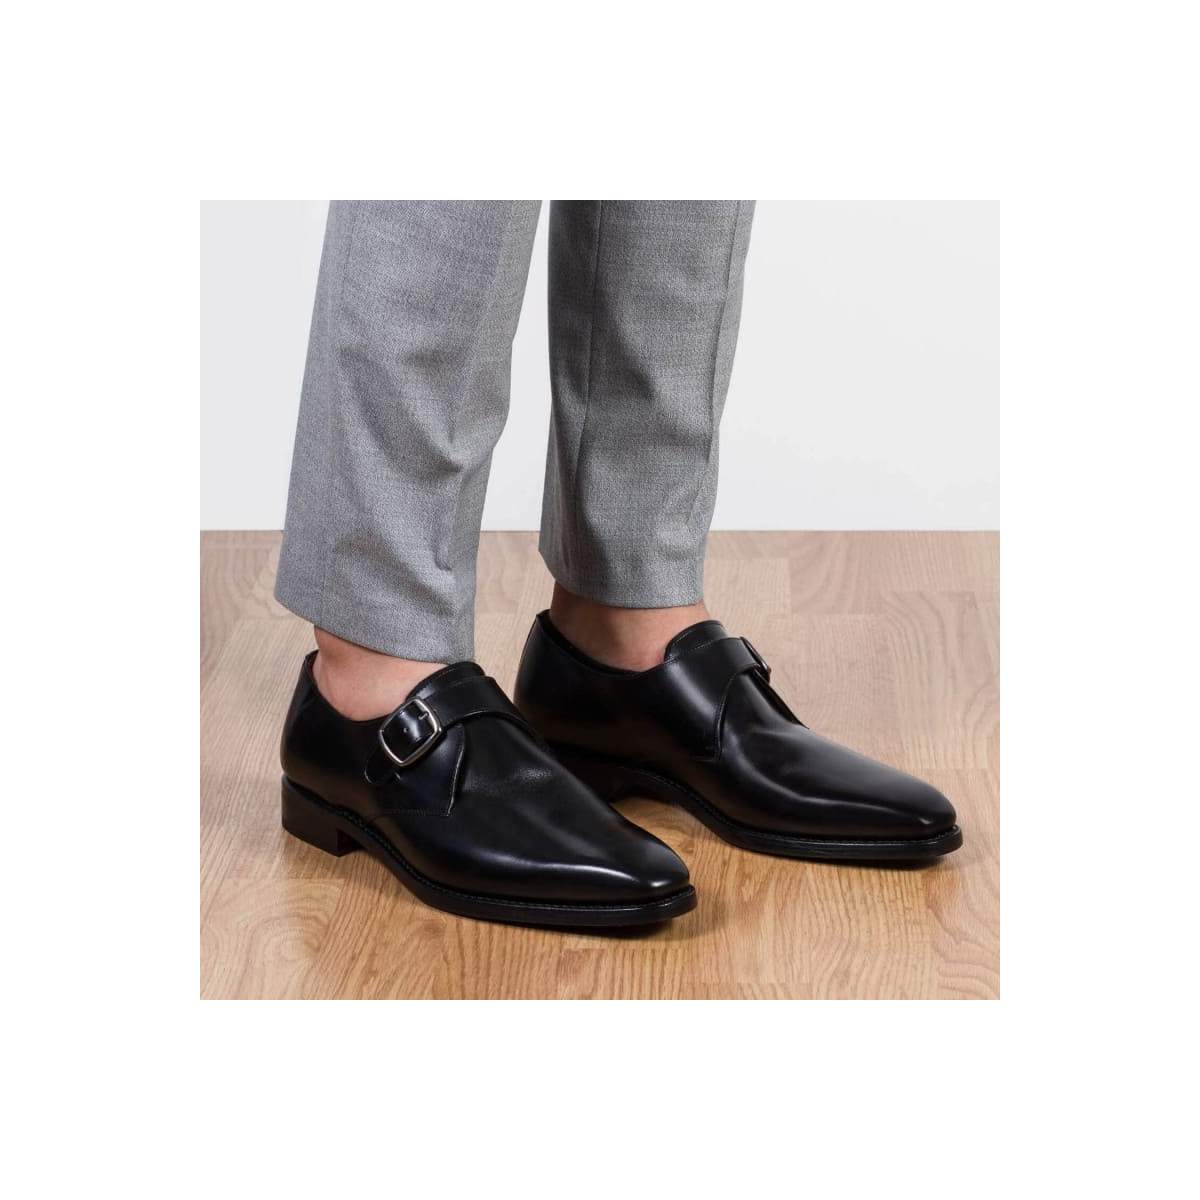 Chaussures à boucle homme en cuir noir - Noir - michel